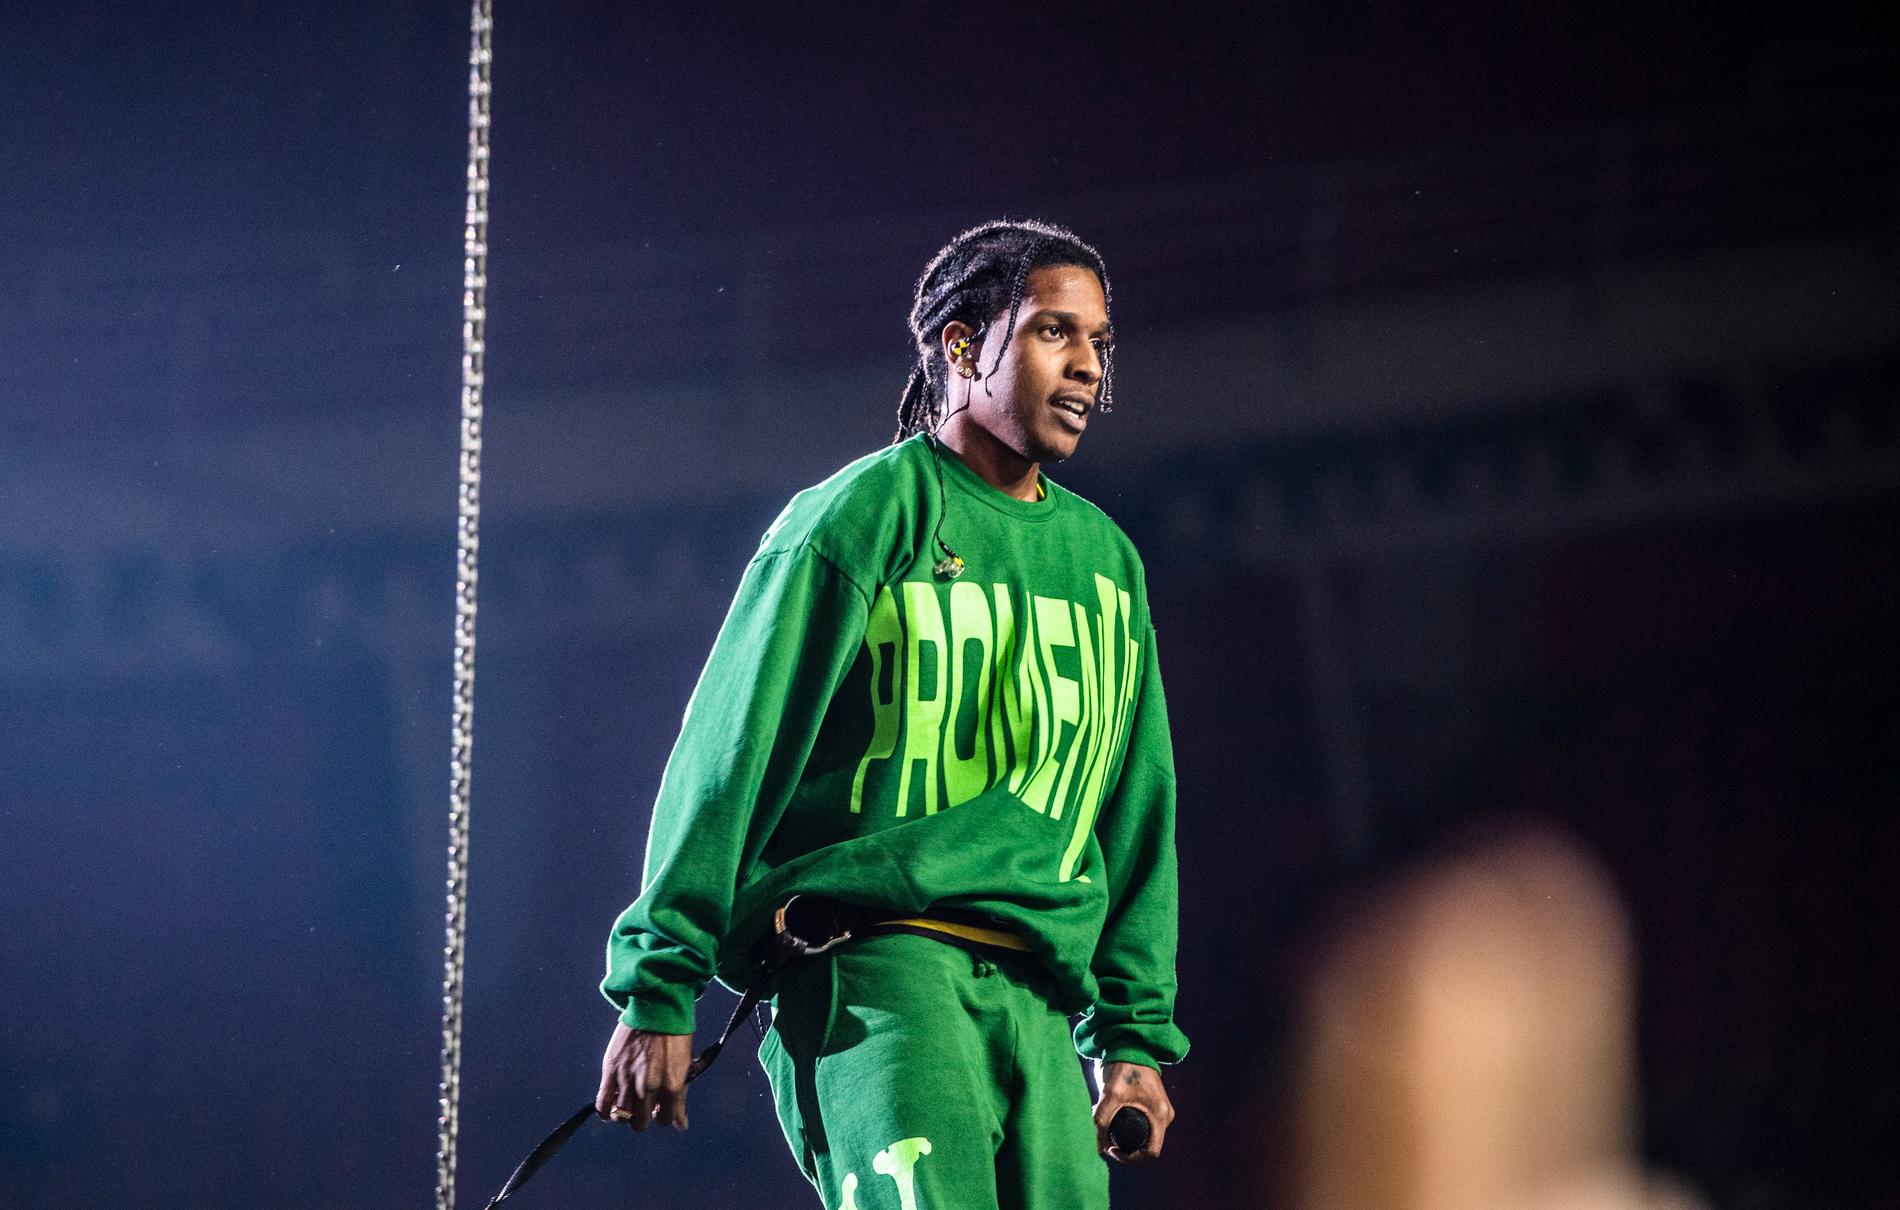 Asap Rocky på scen i Globen i Stockholm 2019. Han uppträdde i de gröna kläder han designat för de intagna på Kronobergshäktet.